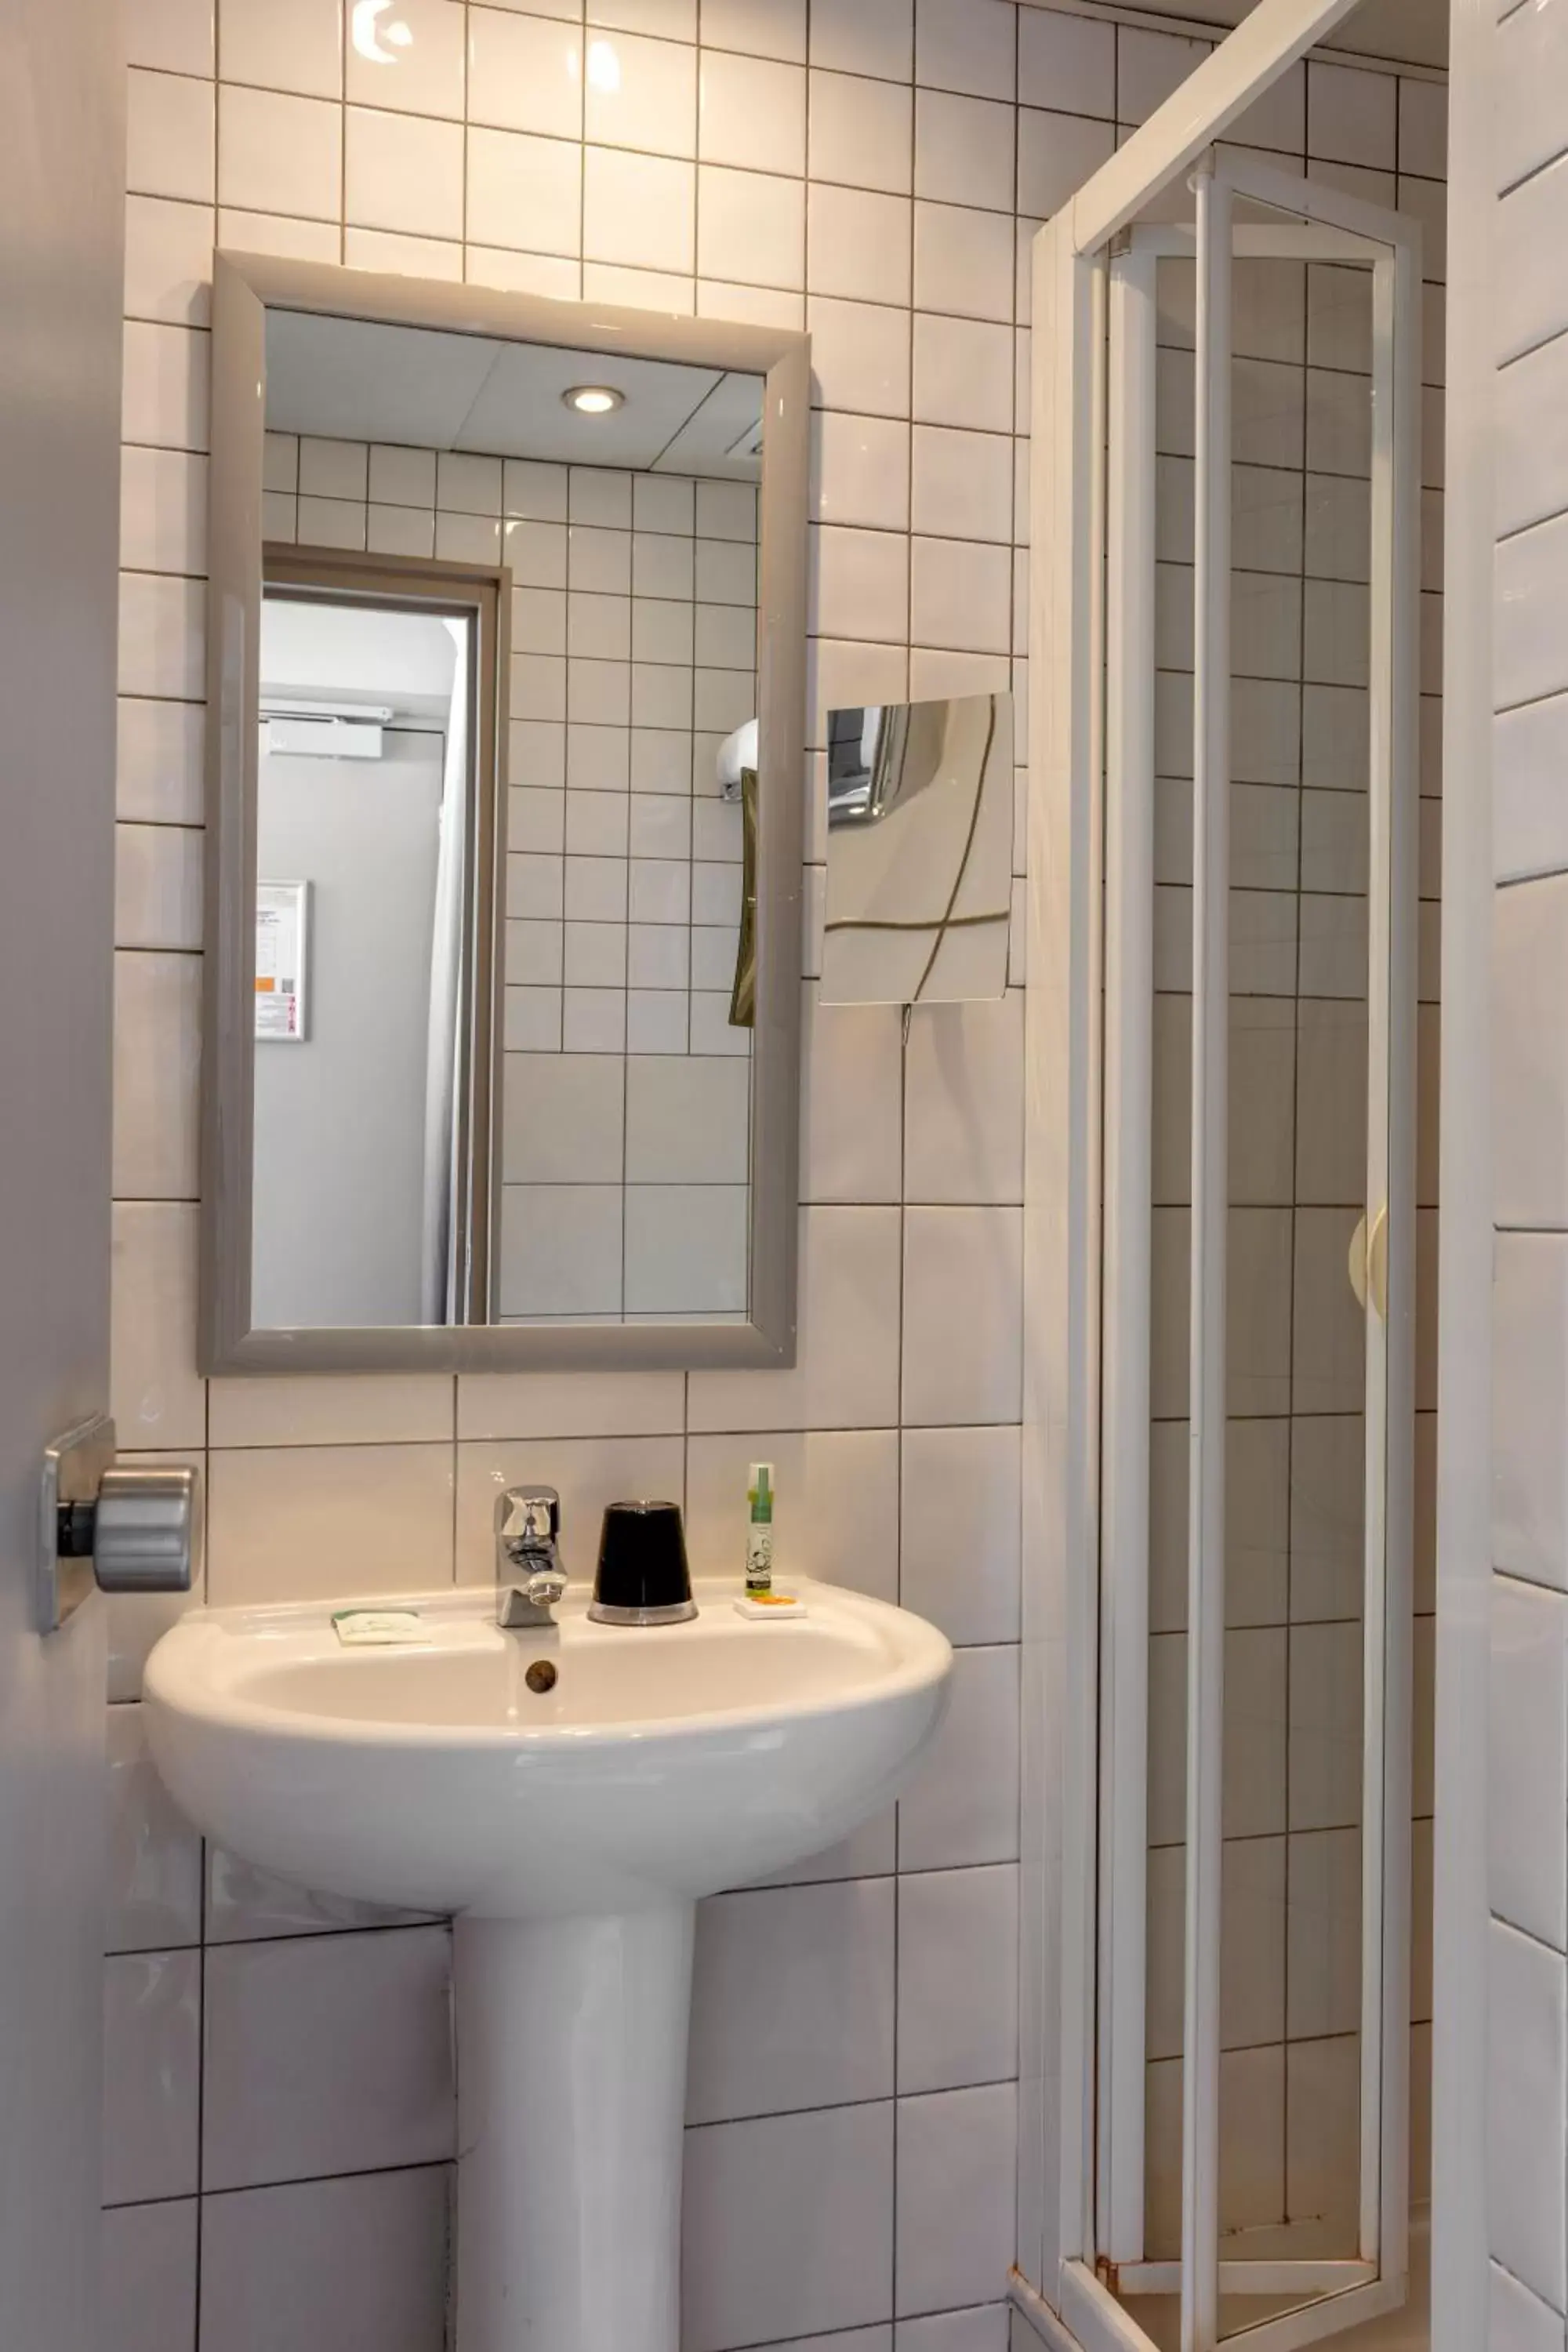 Bathroom in Hotel des Nations Saint Germain